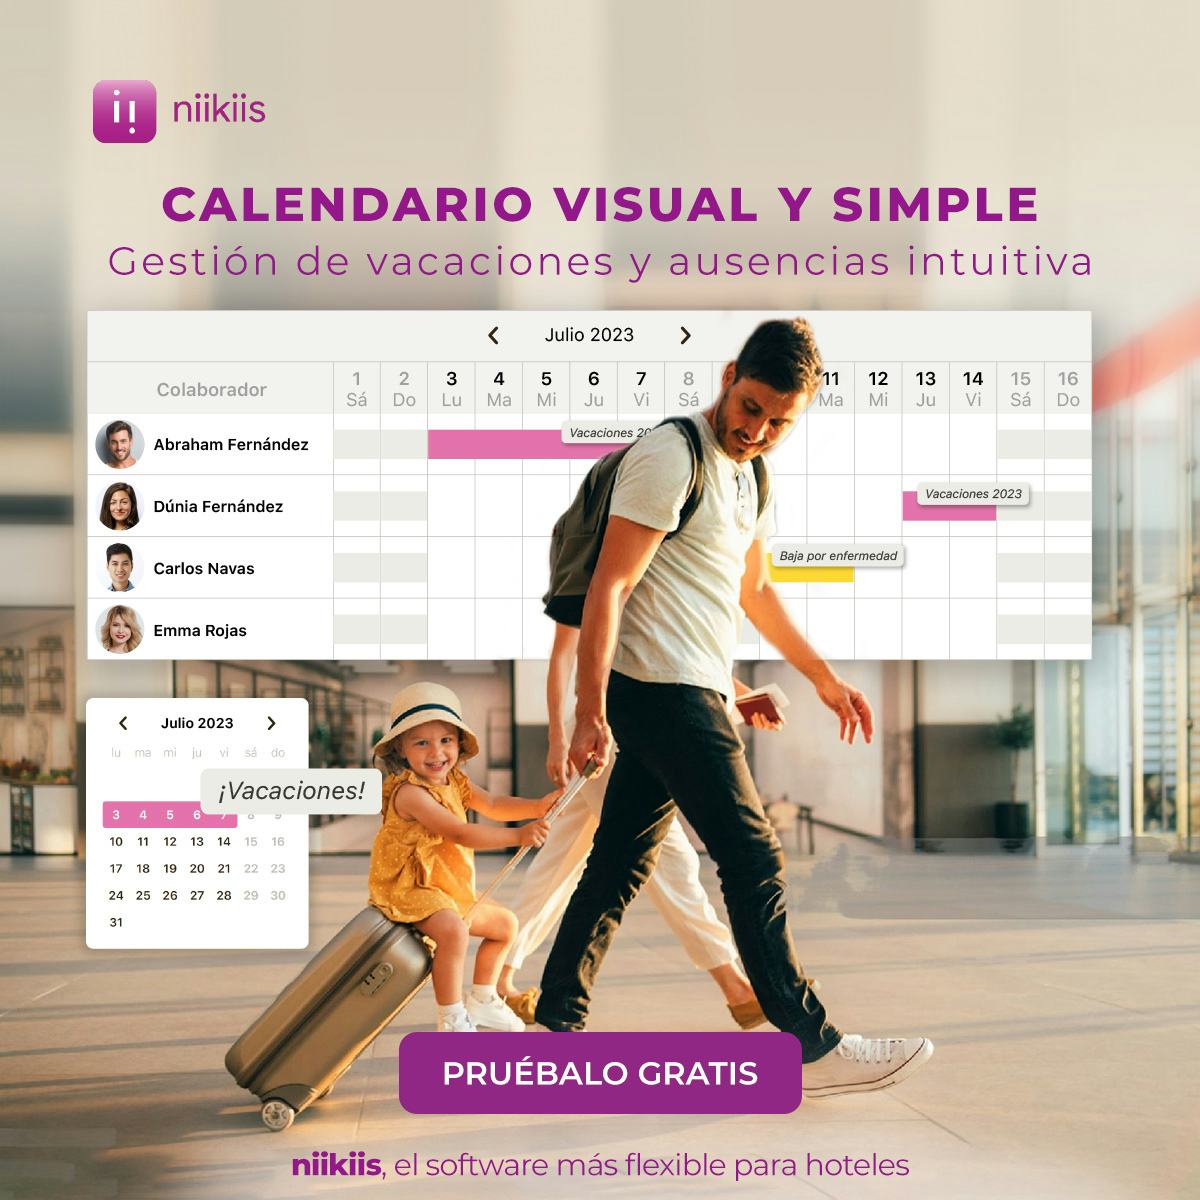 niikiis Software - Software para la gestión de ausencias con un calendario visual, simple e intuitivo.